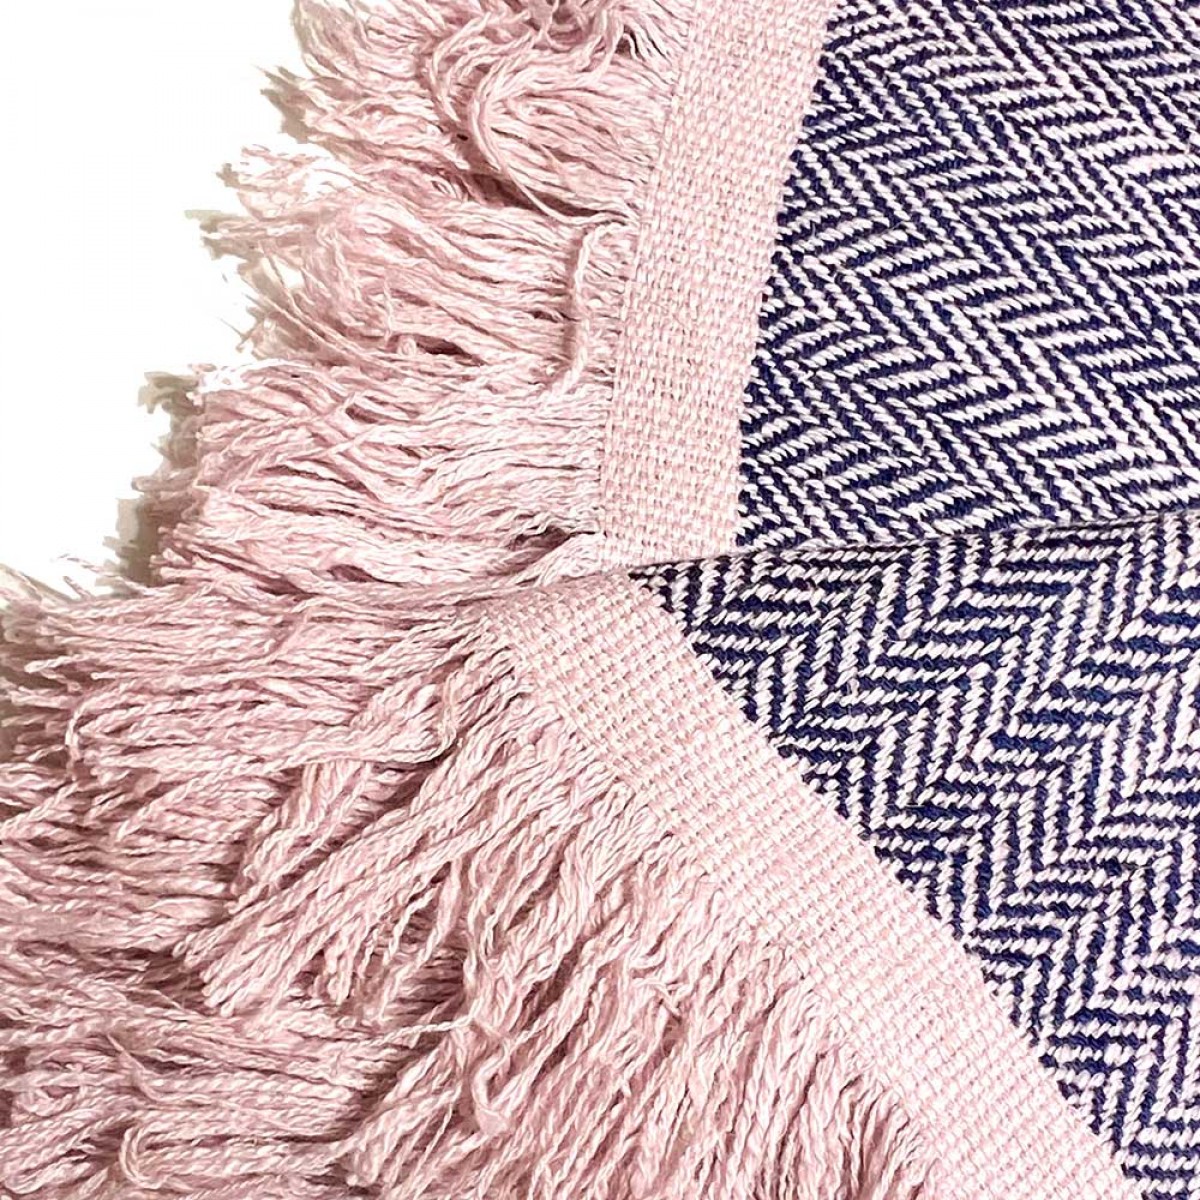 Blue & Pink Tassels Herringbone Cashmere Blanket